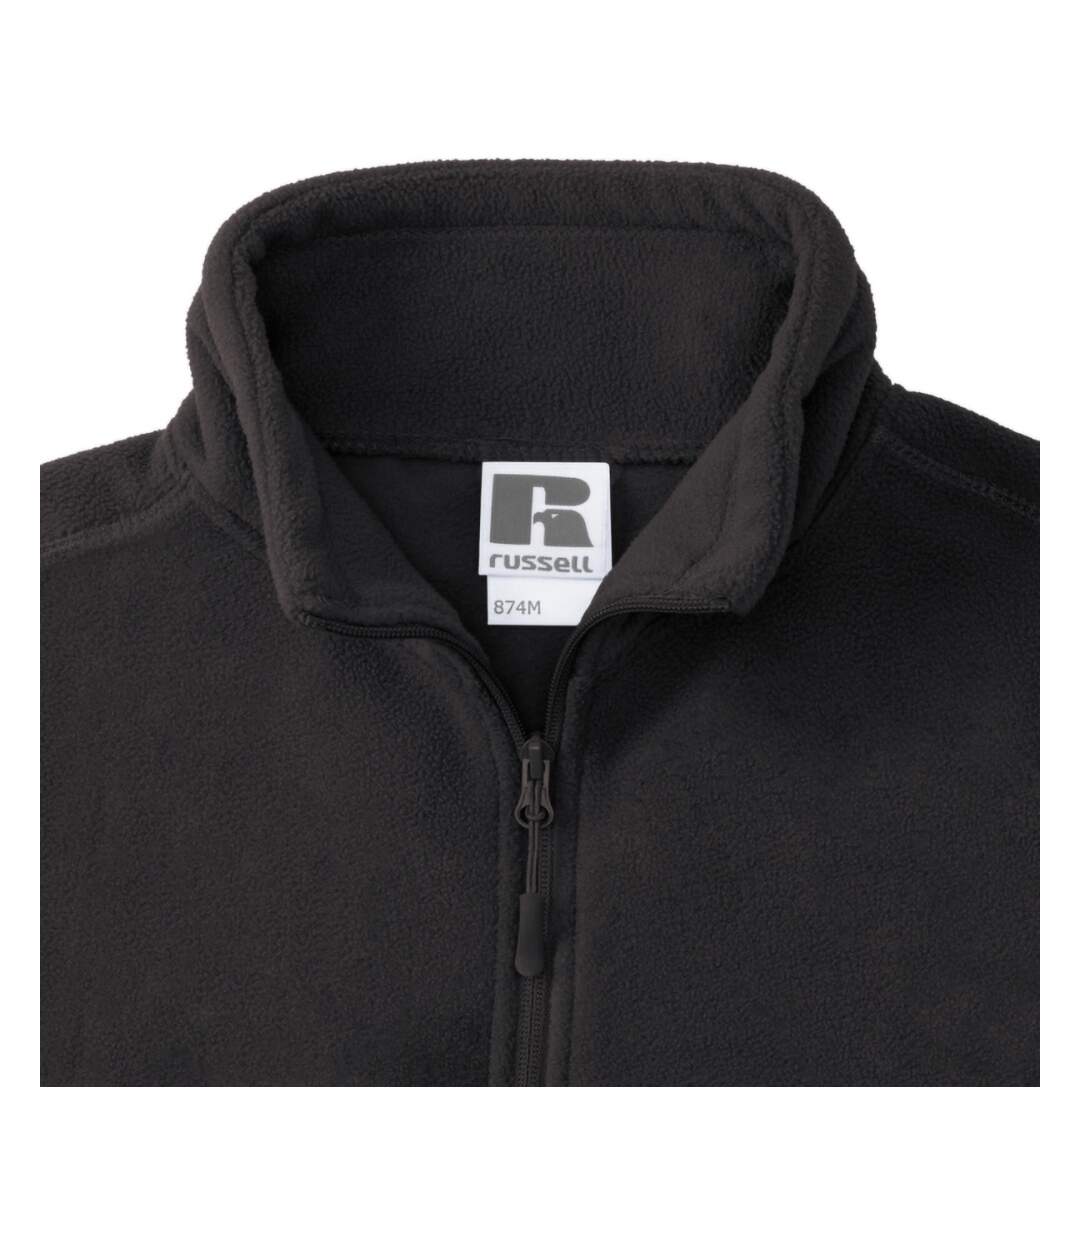 Russell Mens 1/4 Zip Outdoor Fleece Top (Black) - UTBC1438